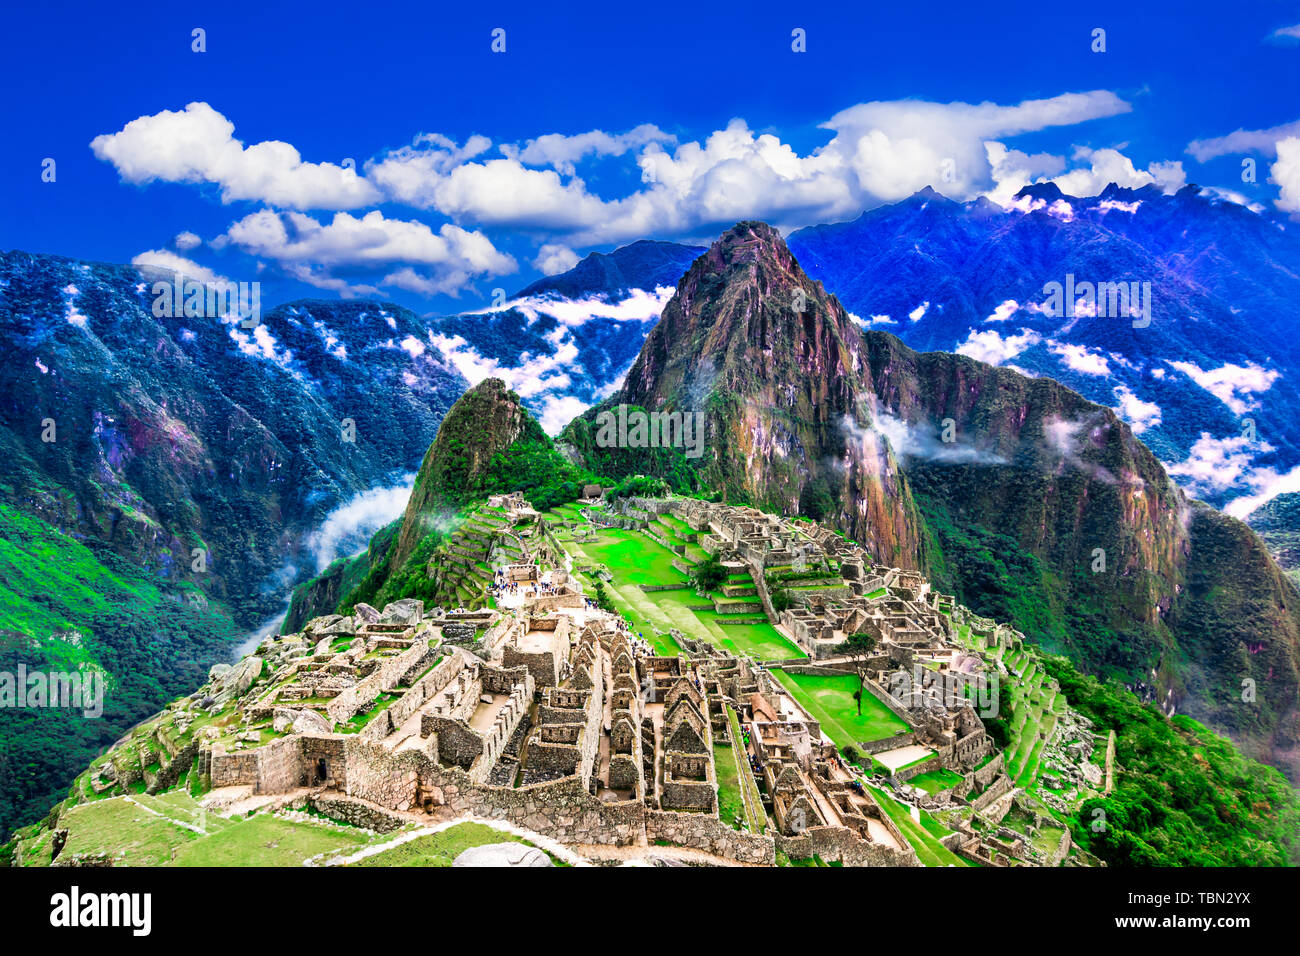 Machu Picchu, Cusco, Peru: Übersicht der verlorenen Inkastadt Machu Picchu, landwirtschaftlichen Terrassen und Wayna Picchu, Peak im Hintergrund Stockfoto